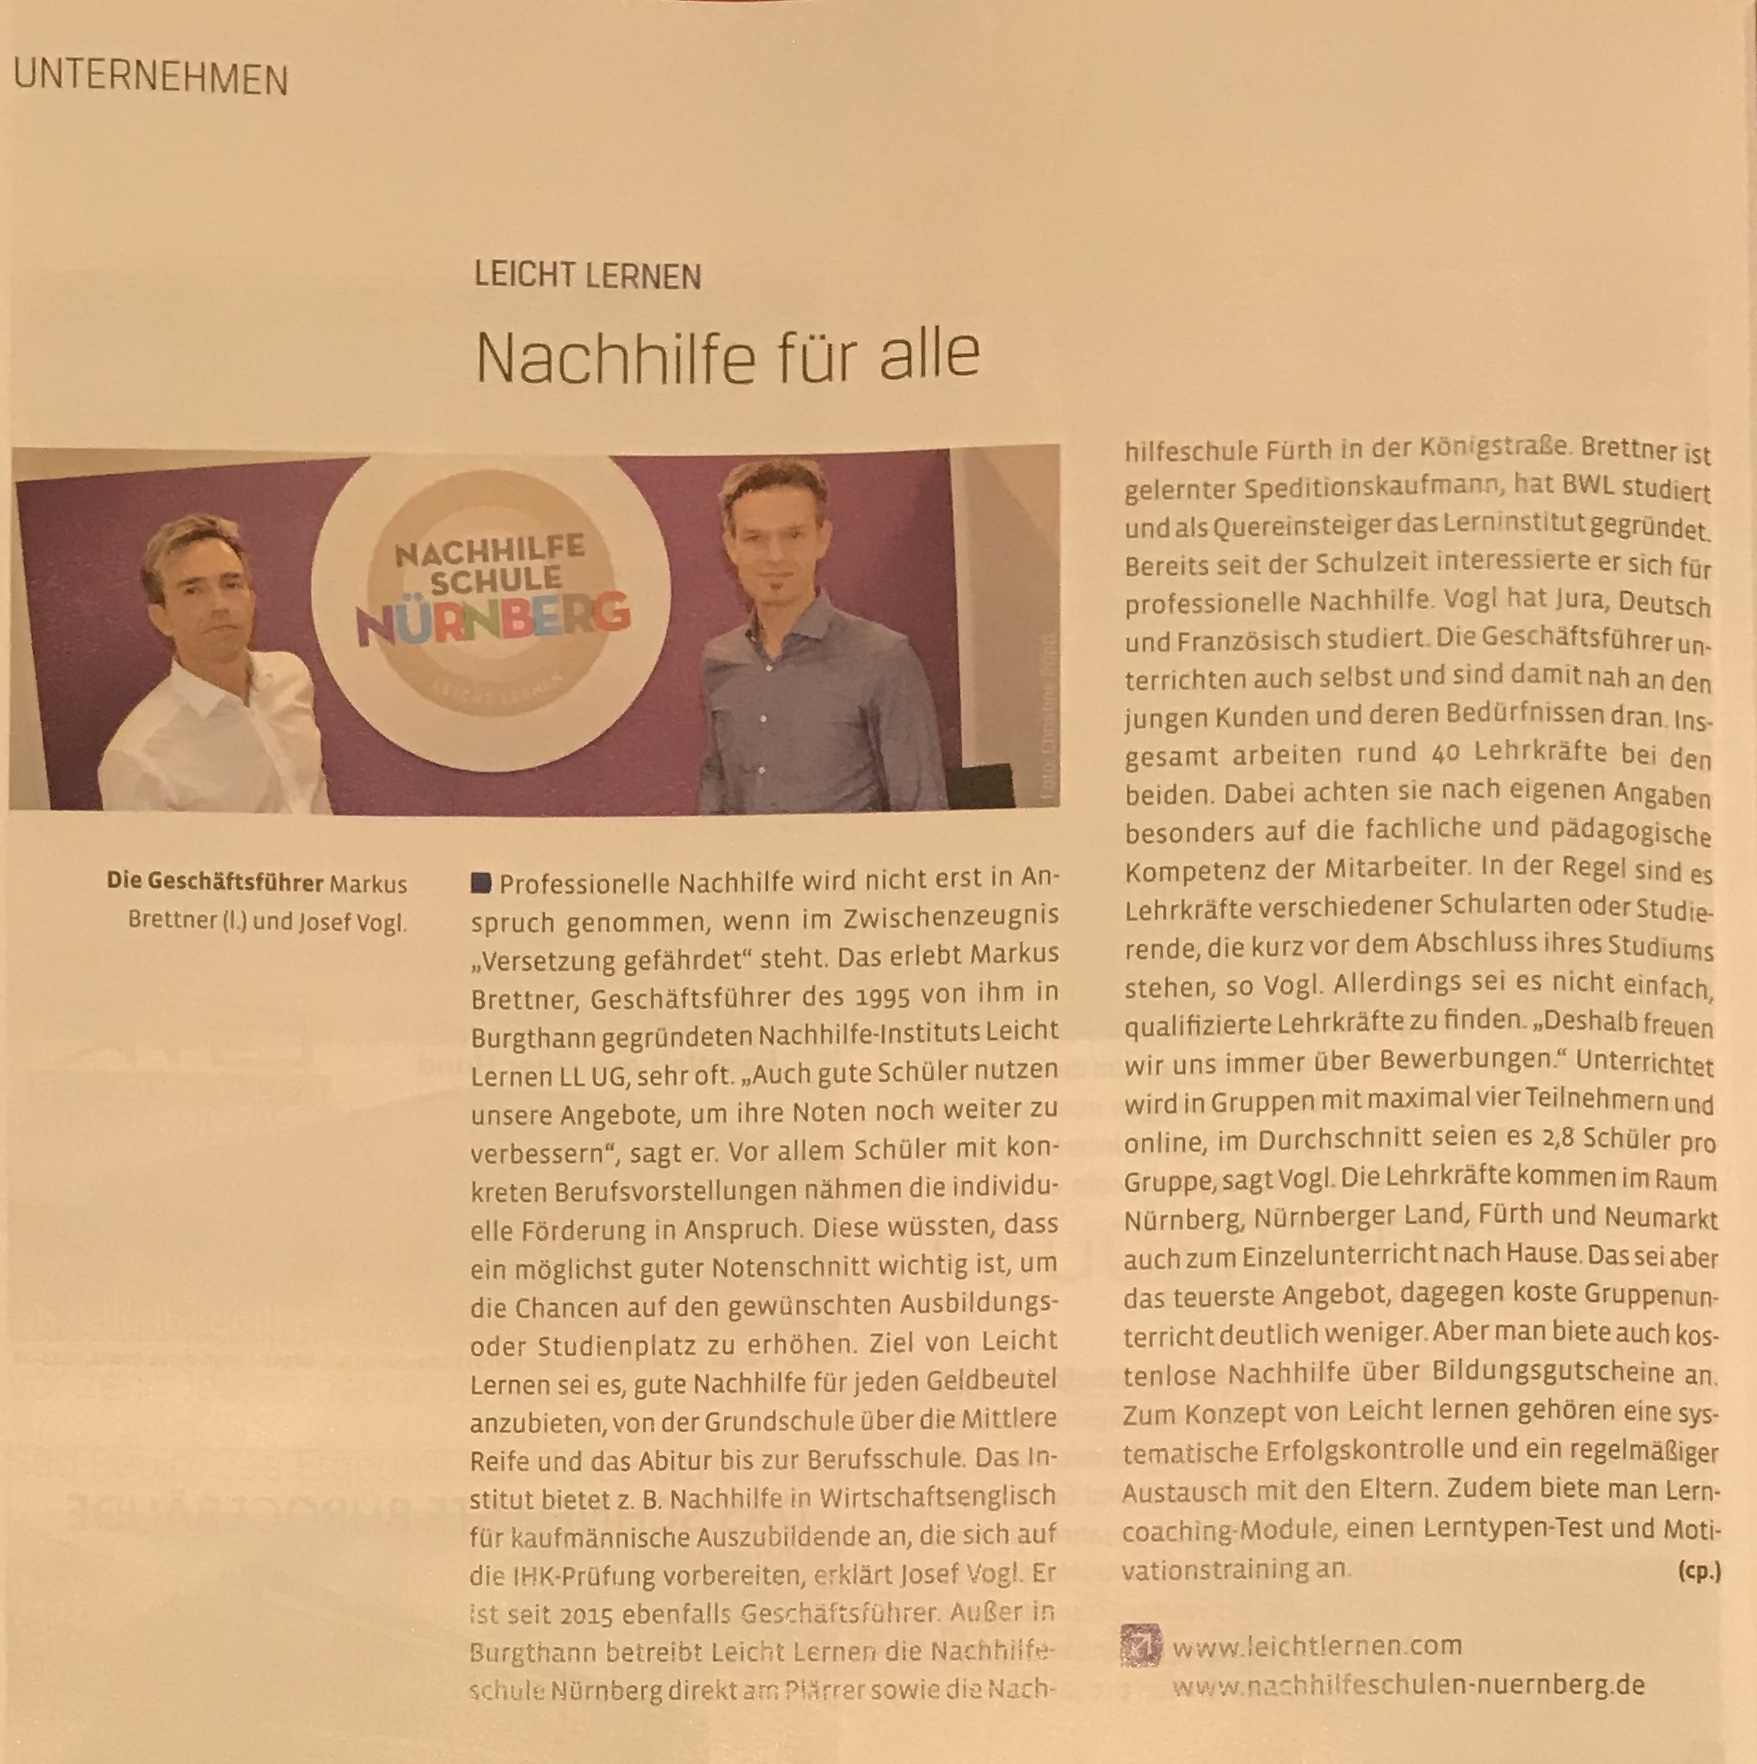 IHK Pressebericht 11.2019 Nachhilfe Nürnberg Leicht Lernen